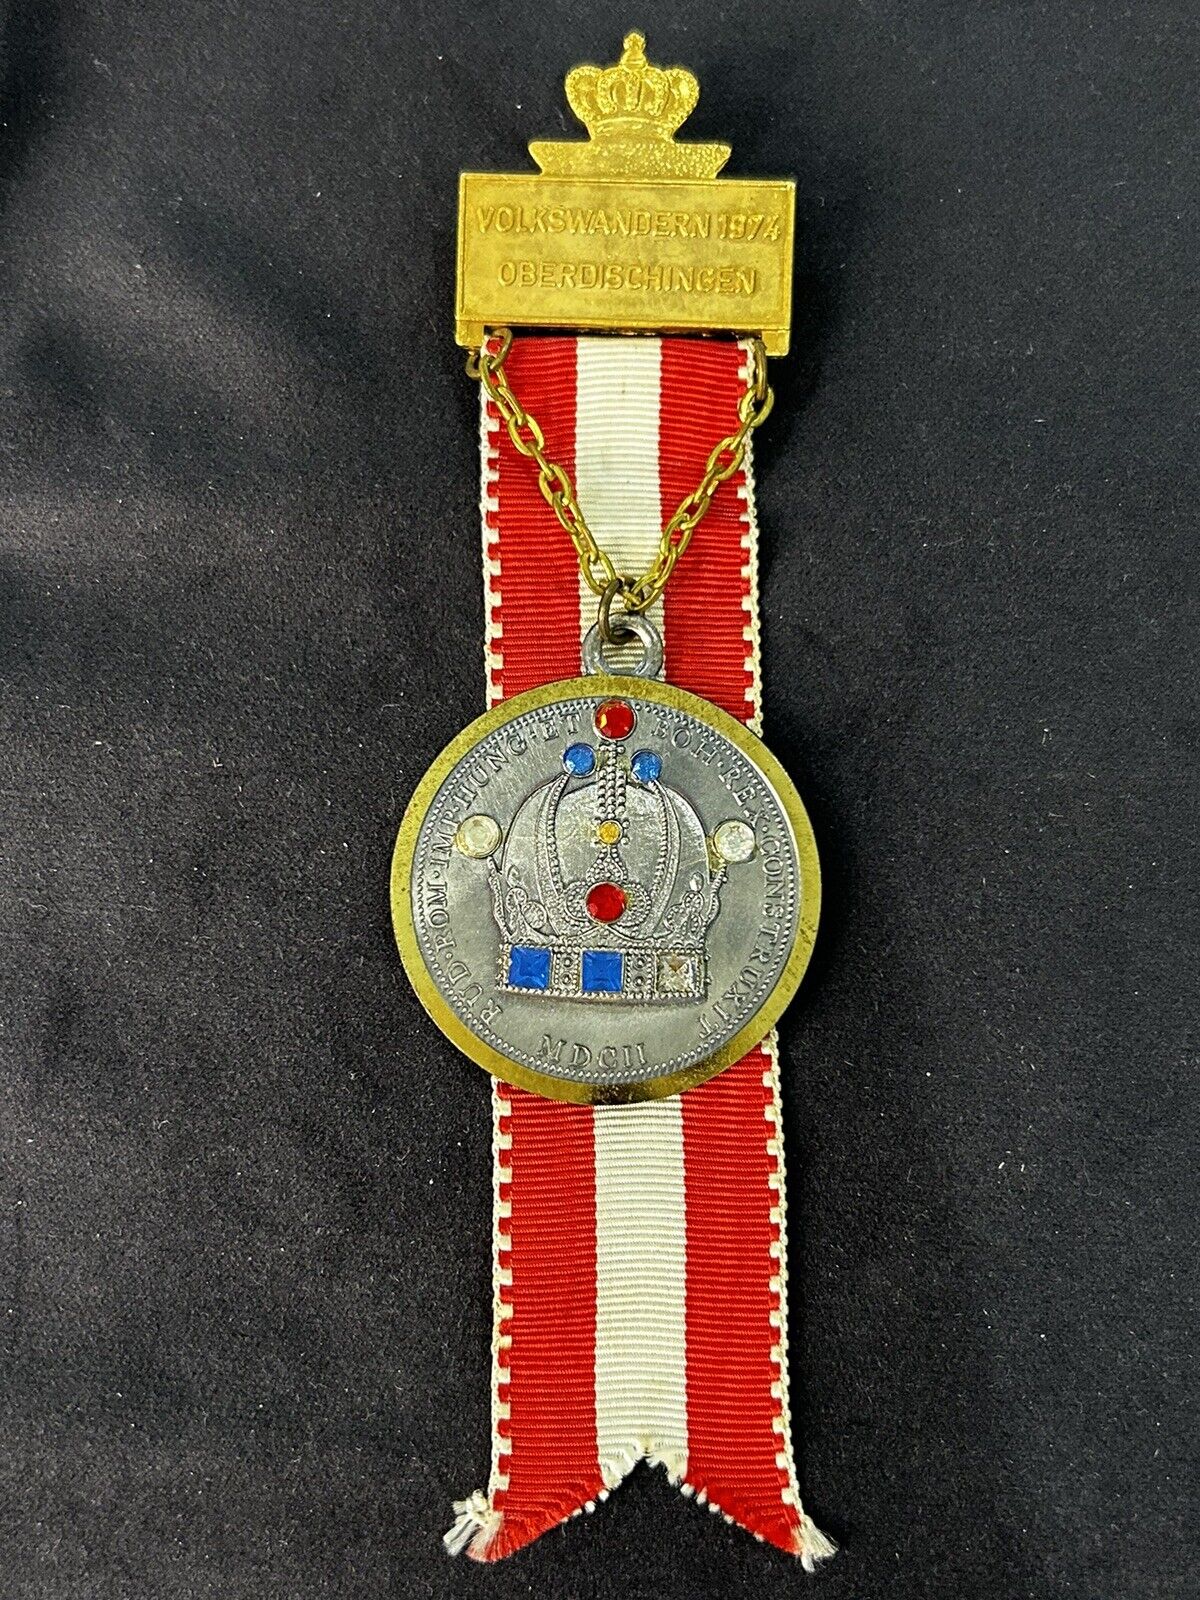 1975 German Medal Crown Pin Badge WW2 Volkswandern 1974 Oberdischingen